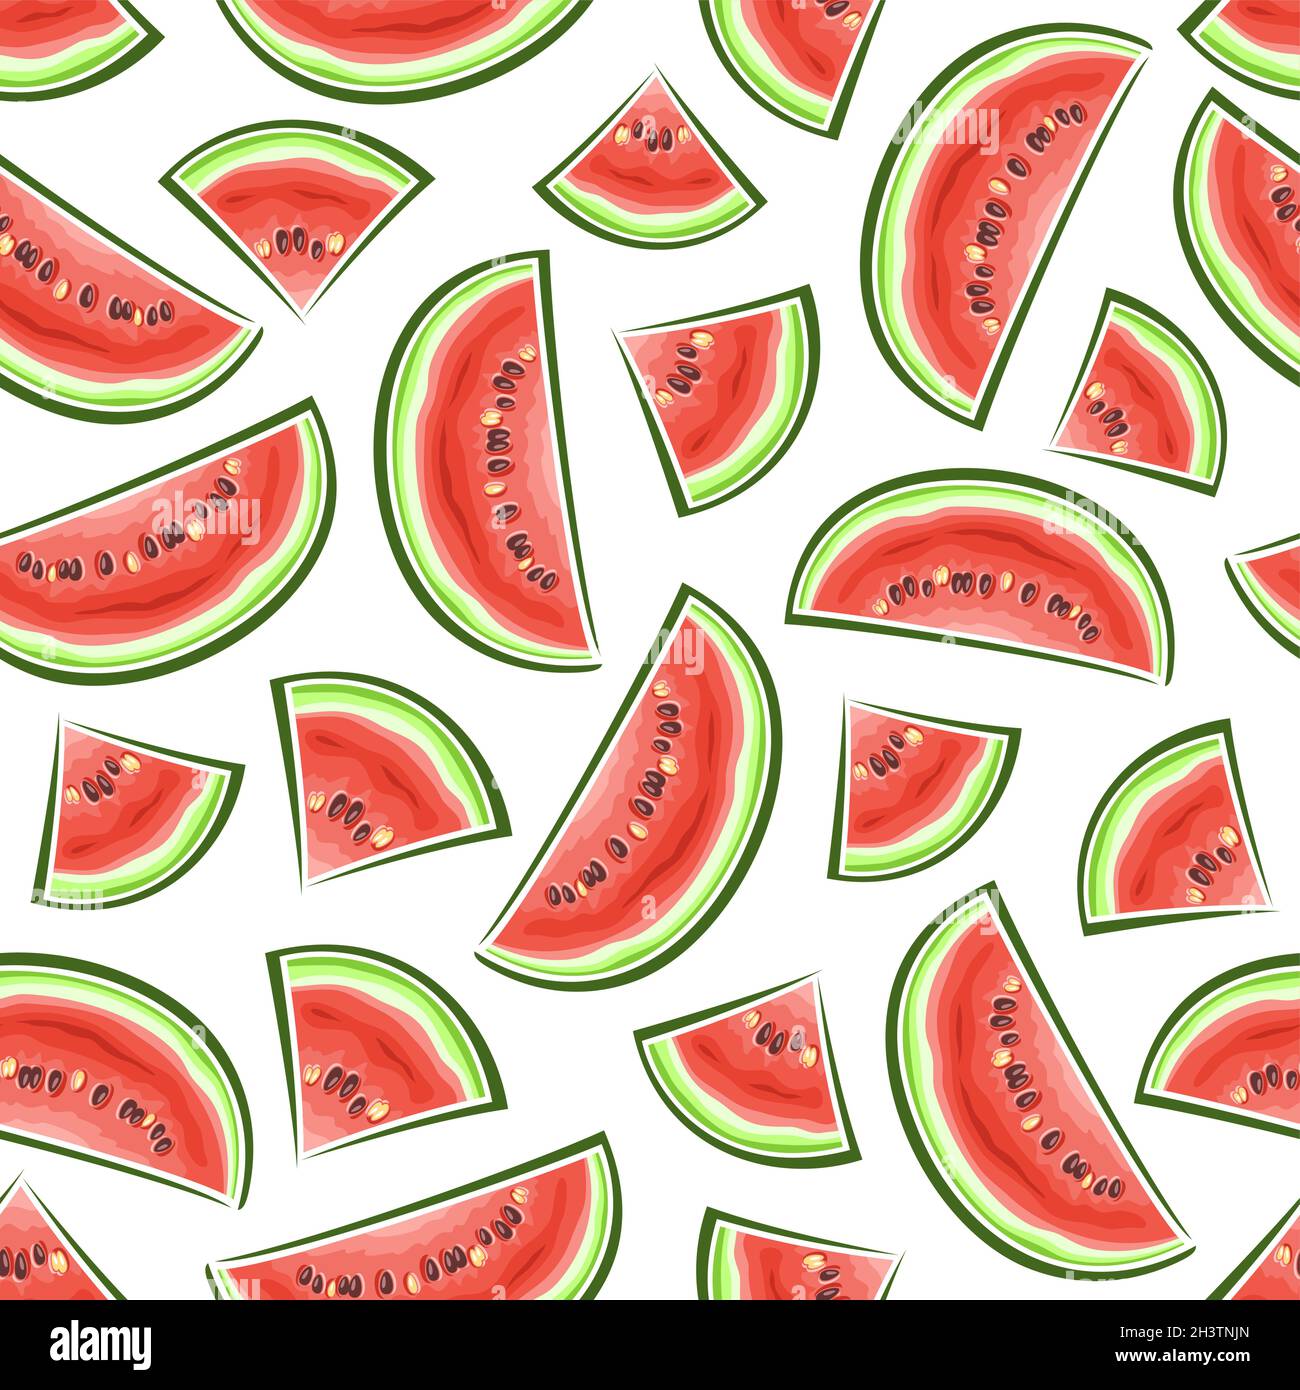 Vektor-Wassermelone Nahtloses Muster, quadratische Wiederholung Hintergrund von geschnittenen Cartoon Wassermelonen mit Samen, dekorative Poster mit ausgeschnittenen Illustrationen Stock Vektor